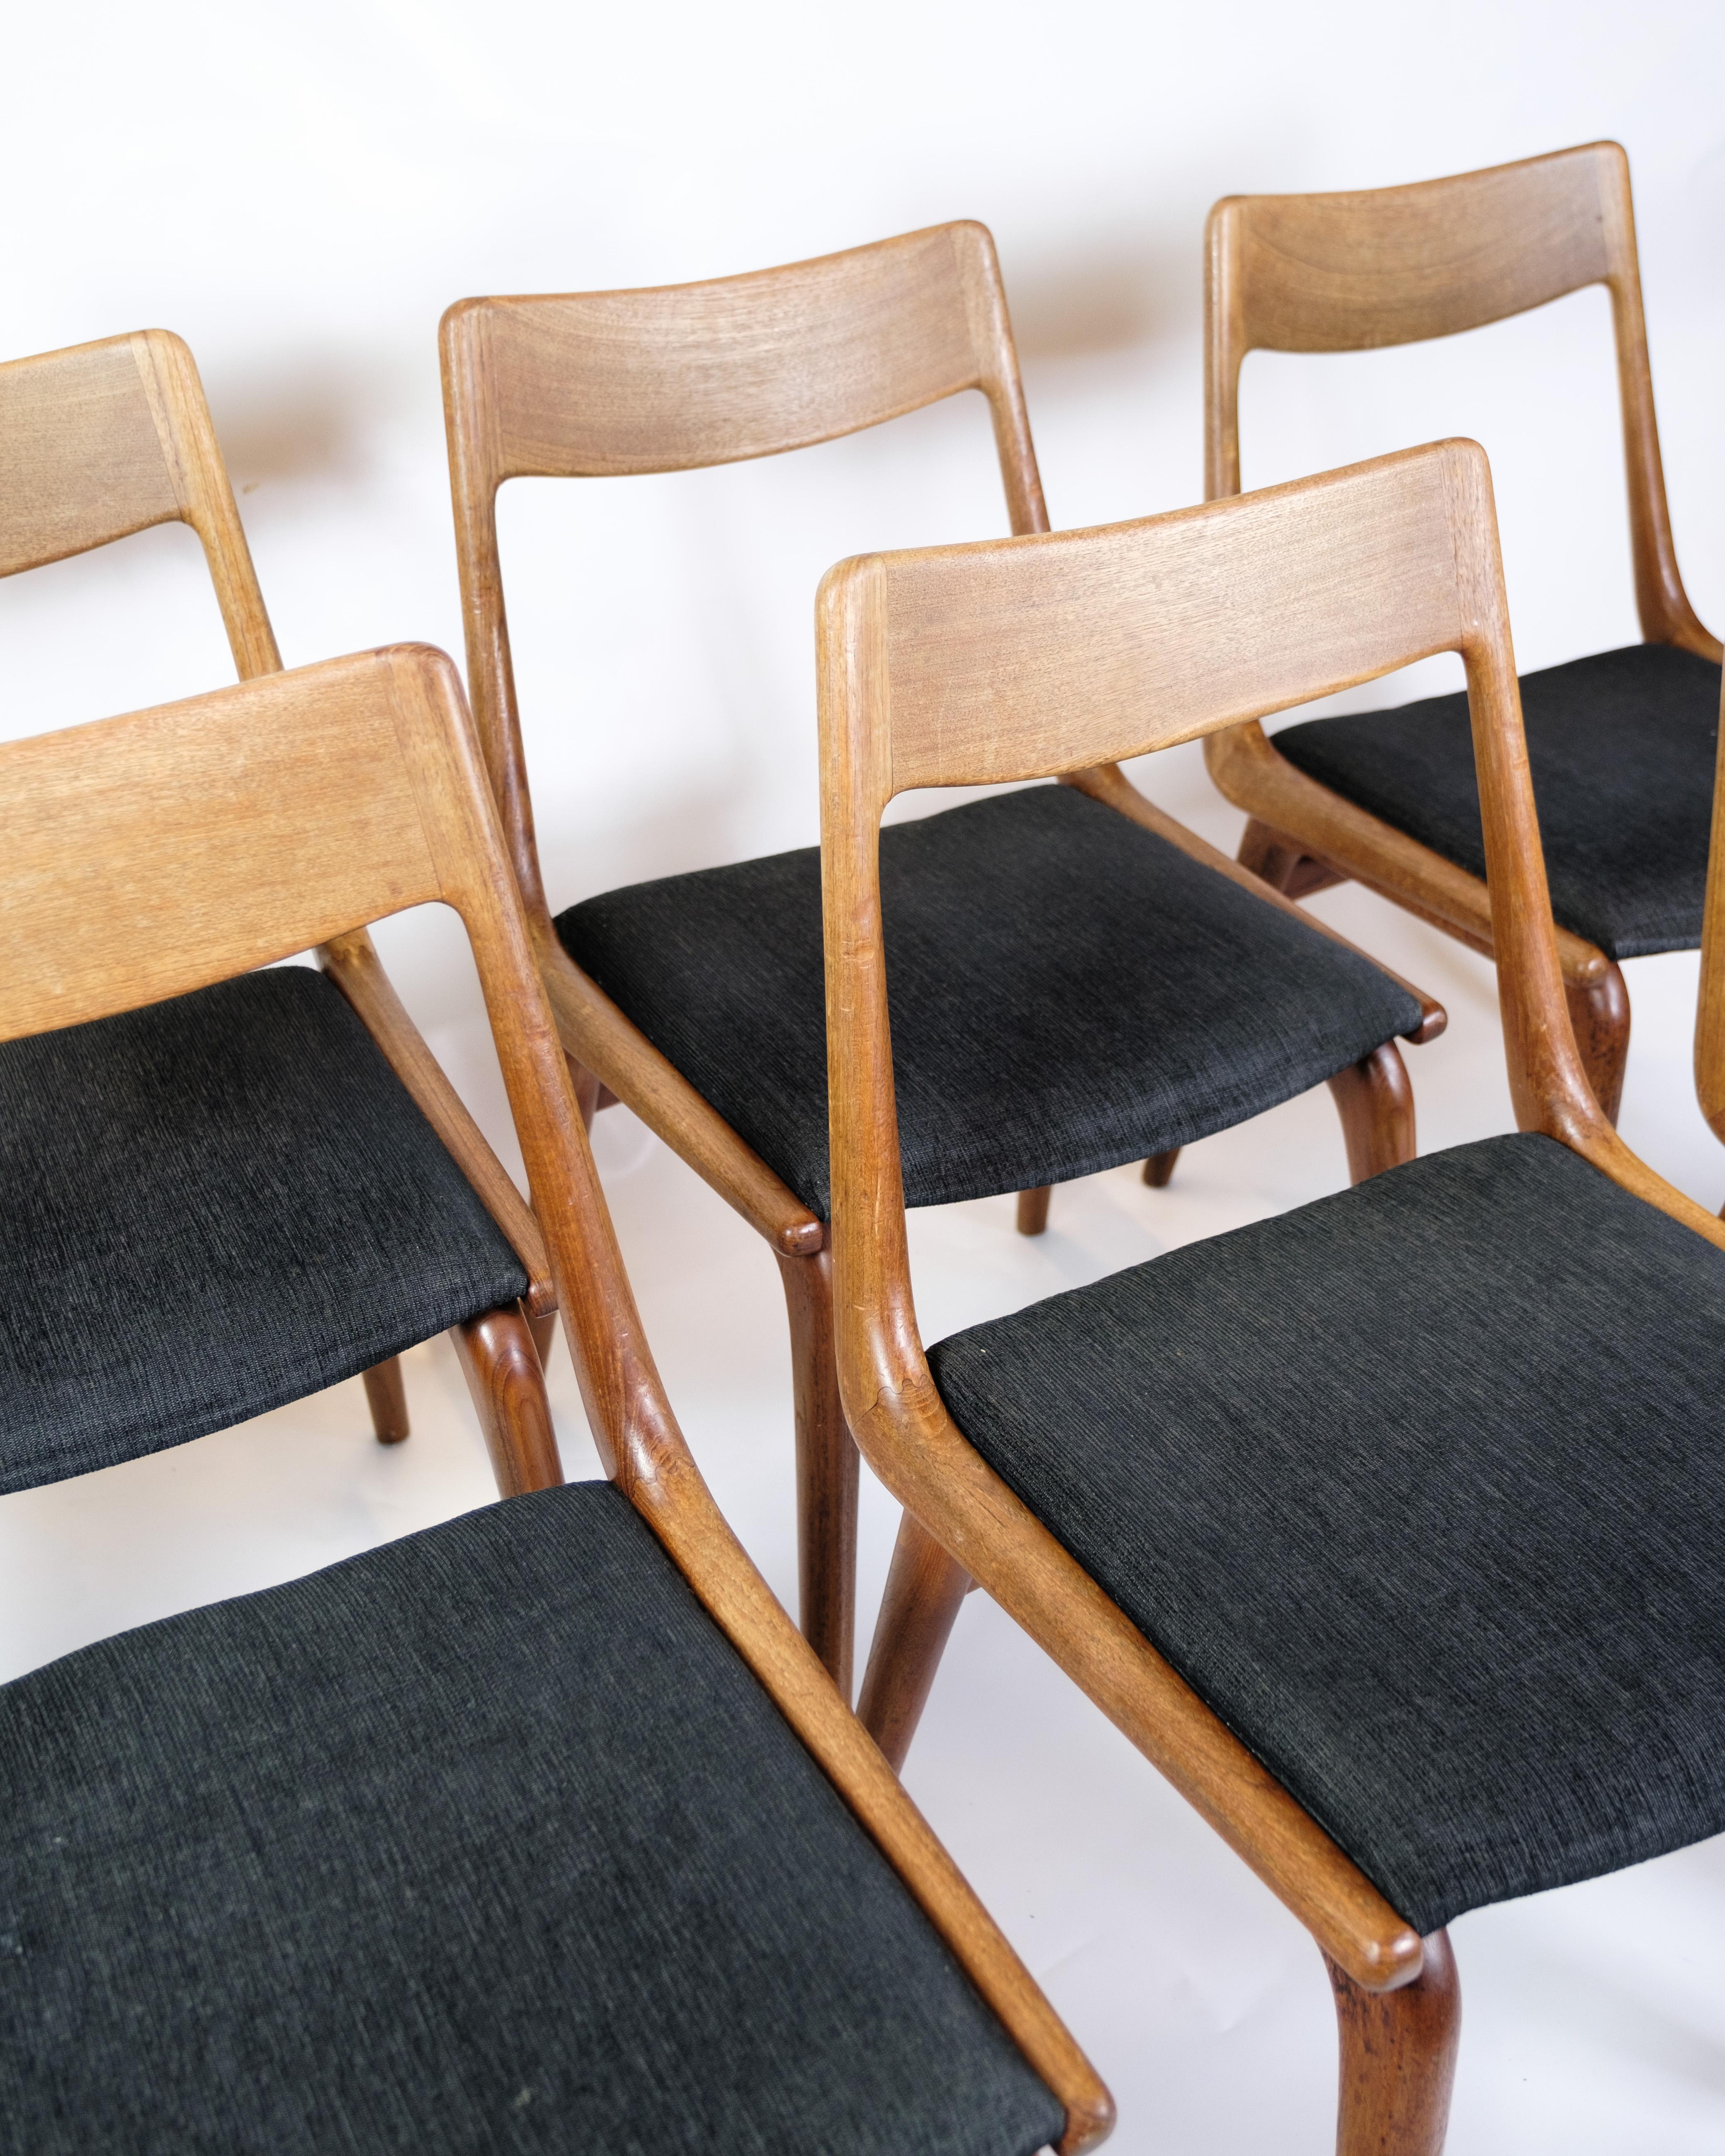 *LE PRIX COMPREND LA REMISE À NEUF DE L'ENSEMBLE DES BOISERIES DE TOUTES LES CHAISES.

L'ensemble de six chaises de The Furniture Rooms, également connu sous le nom de Boomerang Chair, modèle 370, est un brillant exemple du design du mobilier danois